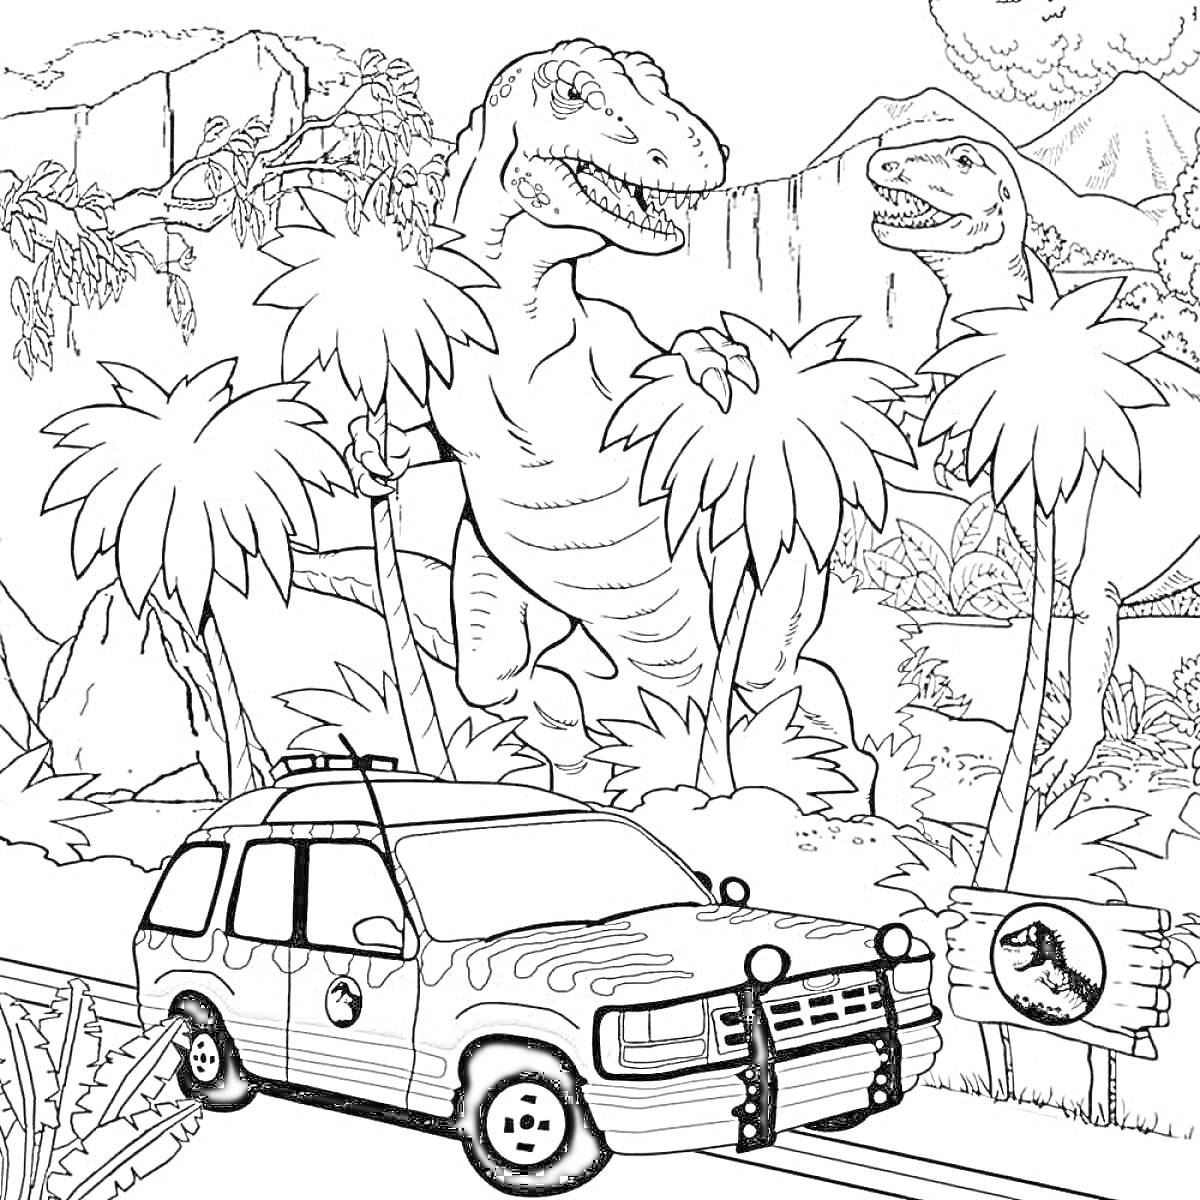 Раскраска Тираннозавры среди пальм с автомобилем на дороге и табличкой с логотипом